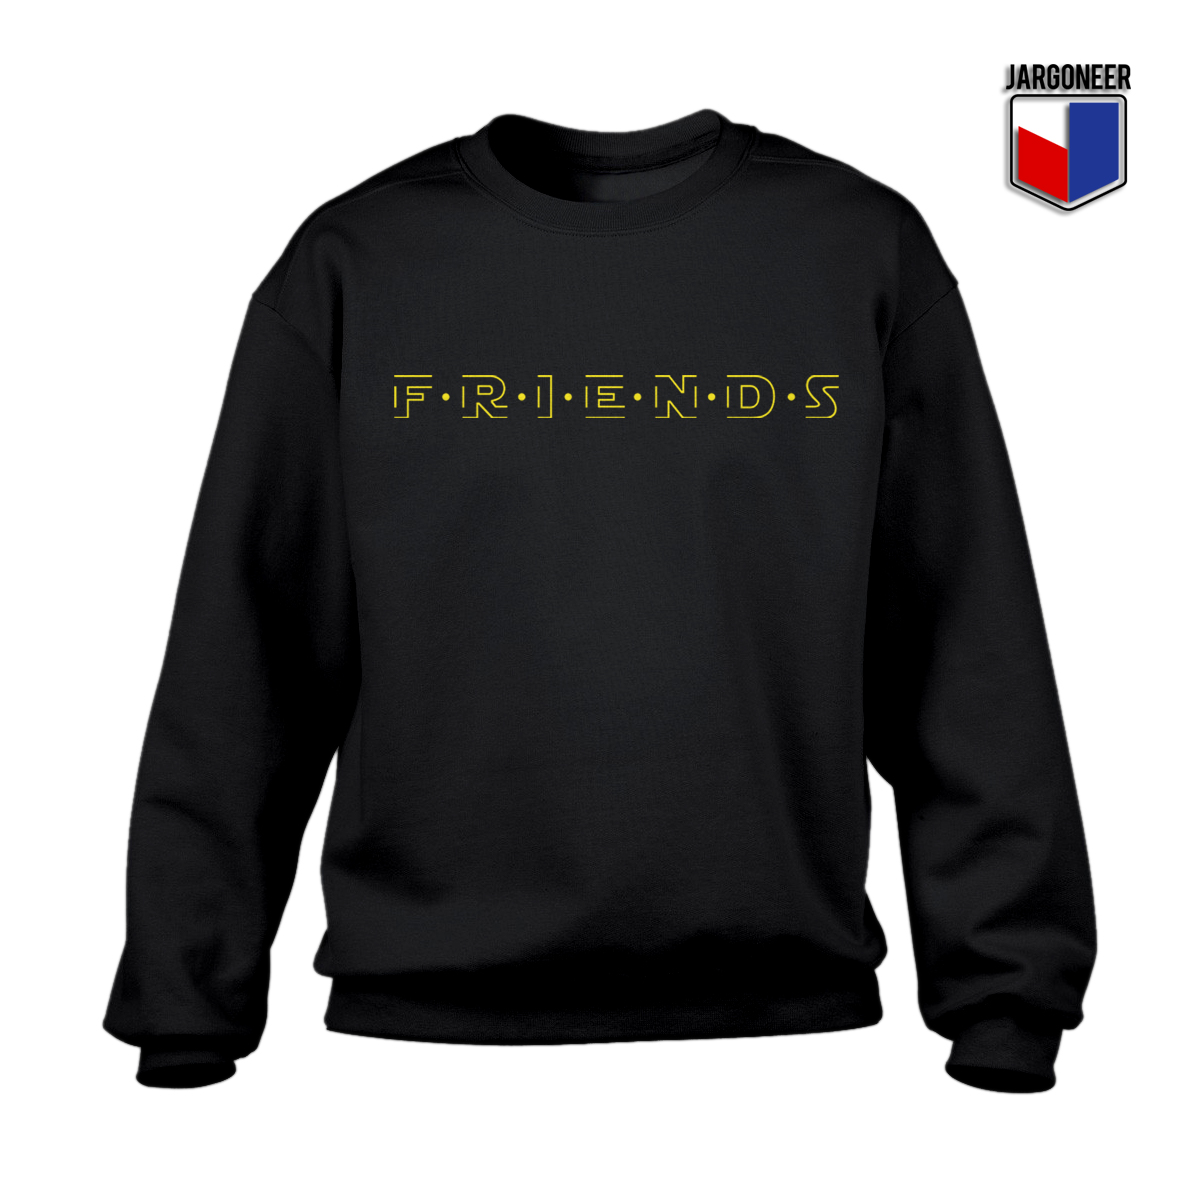 Friends Black Sweatshirt - Shop Unique Graphic Cool Shirt Designs